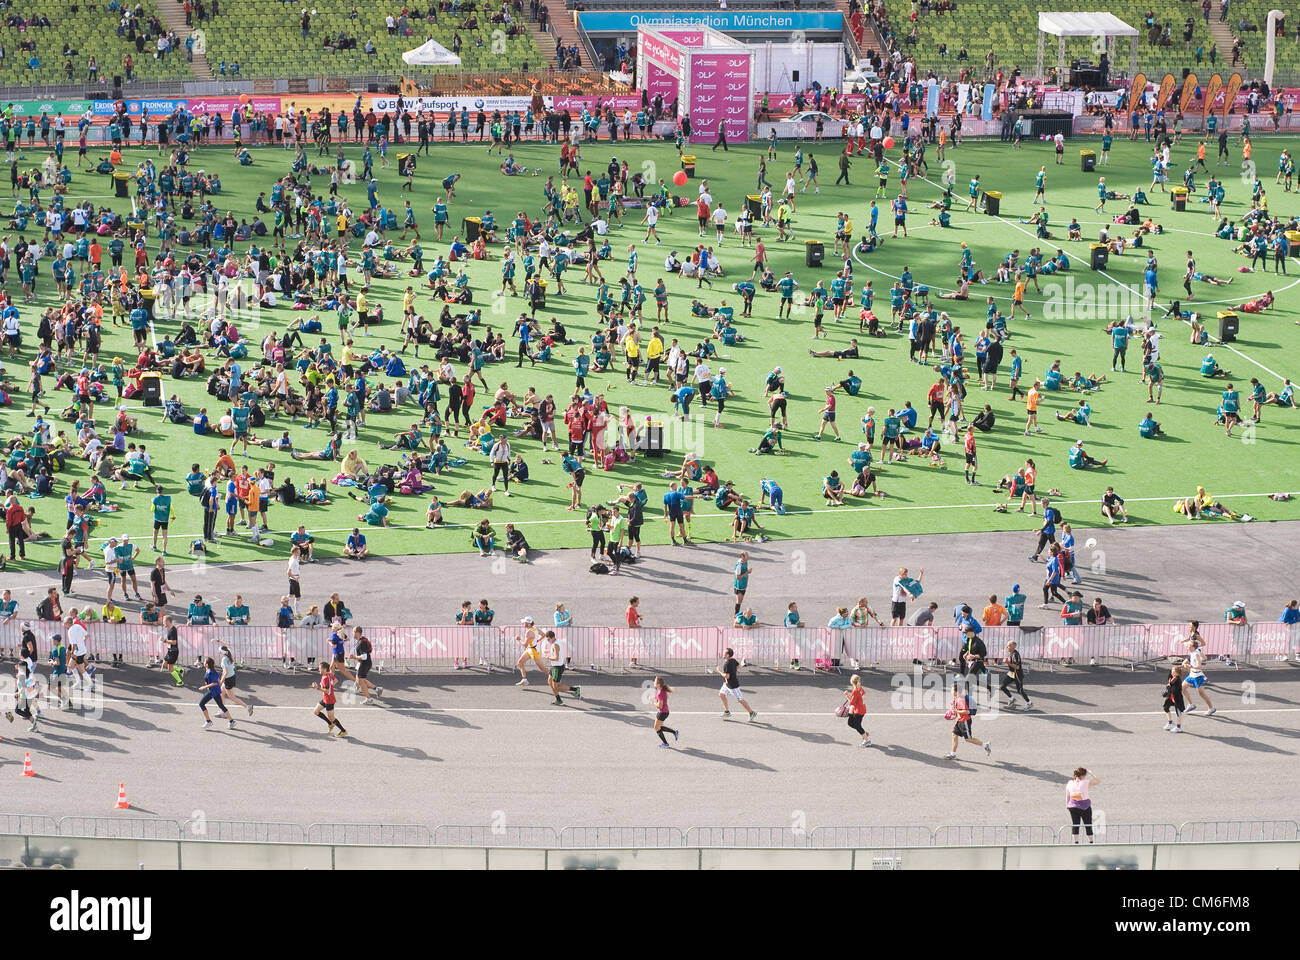 München, Deutschland – 14. Oktober: Am Sonntag nahmen mehr als 18.000 aktive Läufer an 27. München Marathon. Mehr als 100.000 Zuschauer versammelt entlang der Strecke bei sonnigem Wetter 14. Oktober 2012 in München. Stockfoto